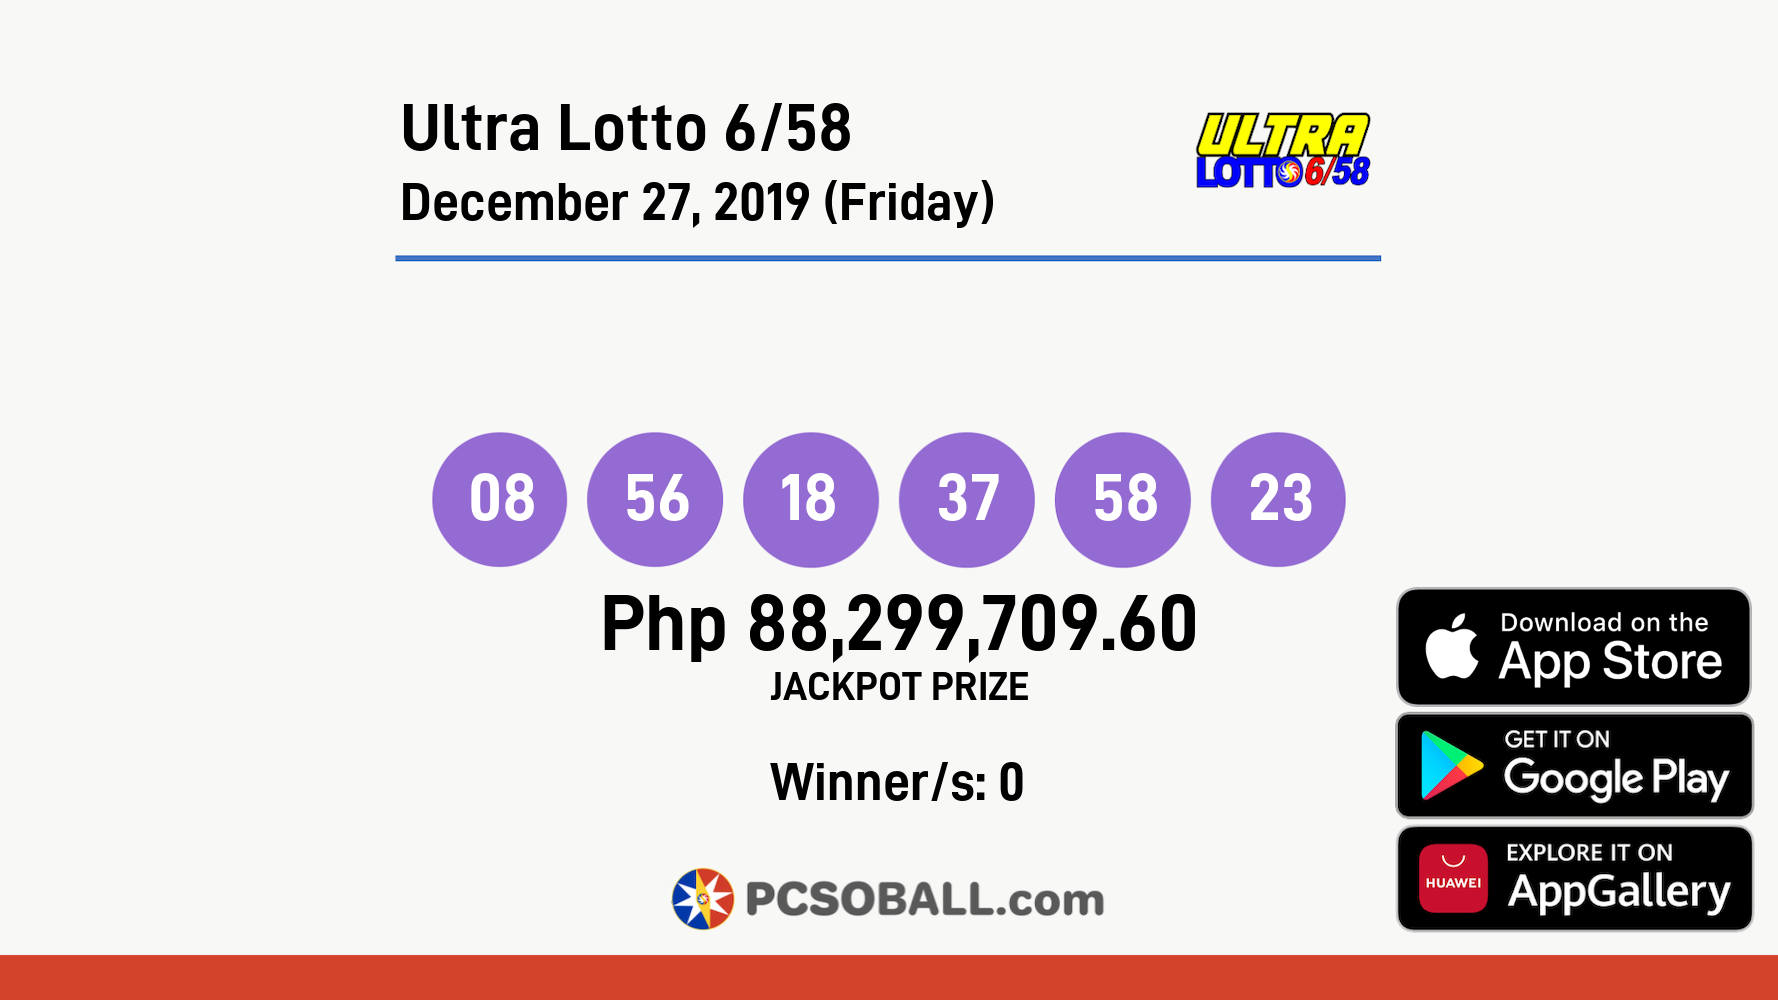 Ultra Lotto 6/58 December 27, 2019 (Friday) Result